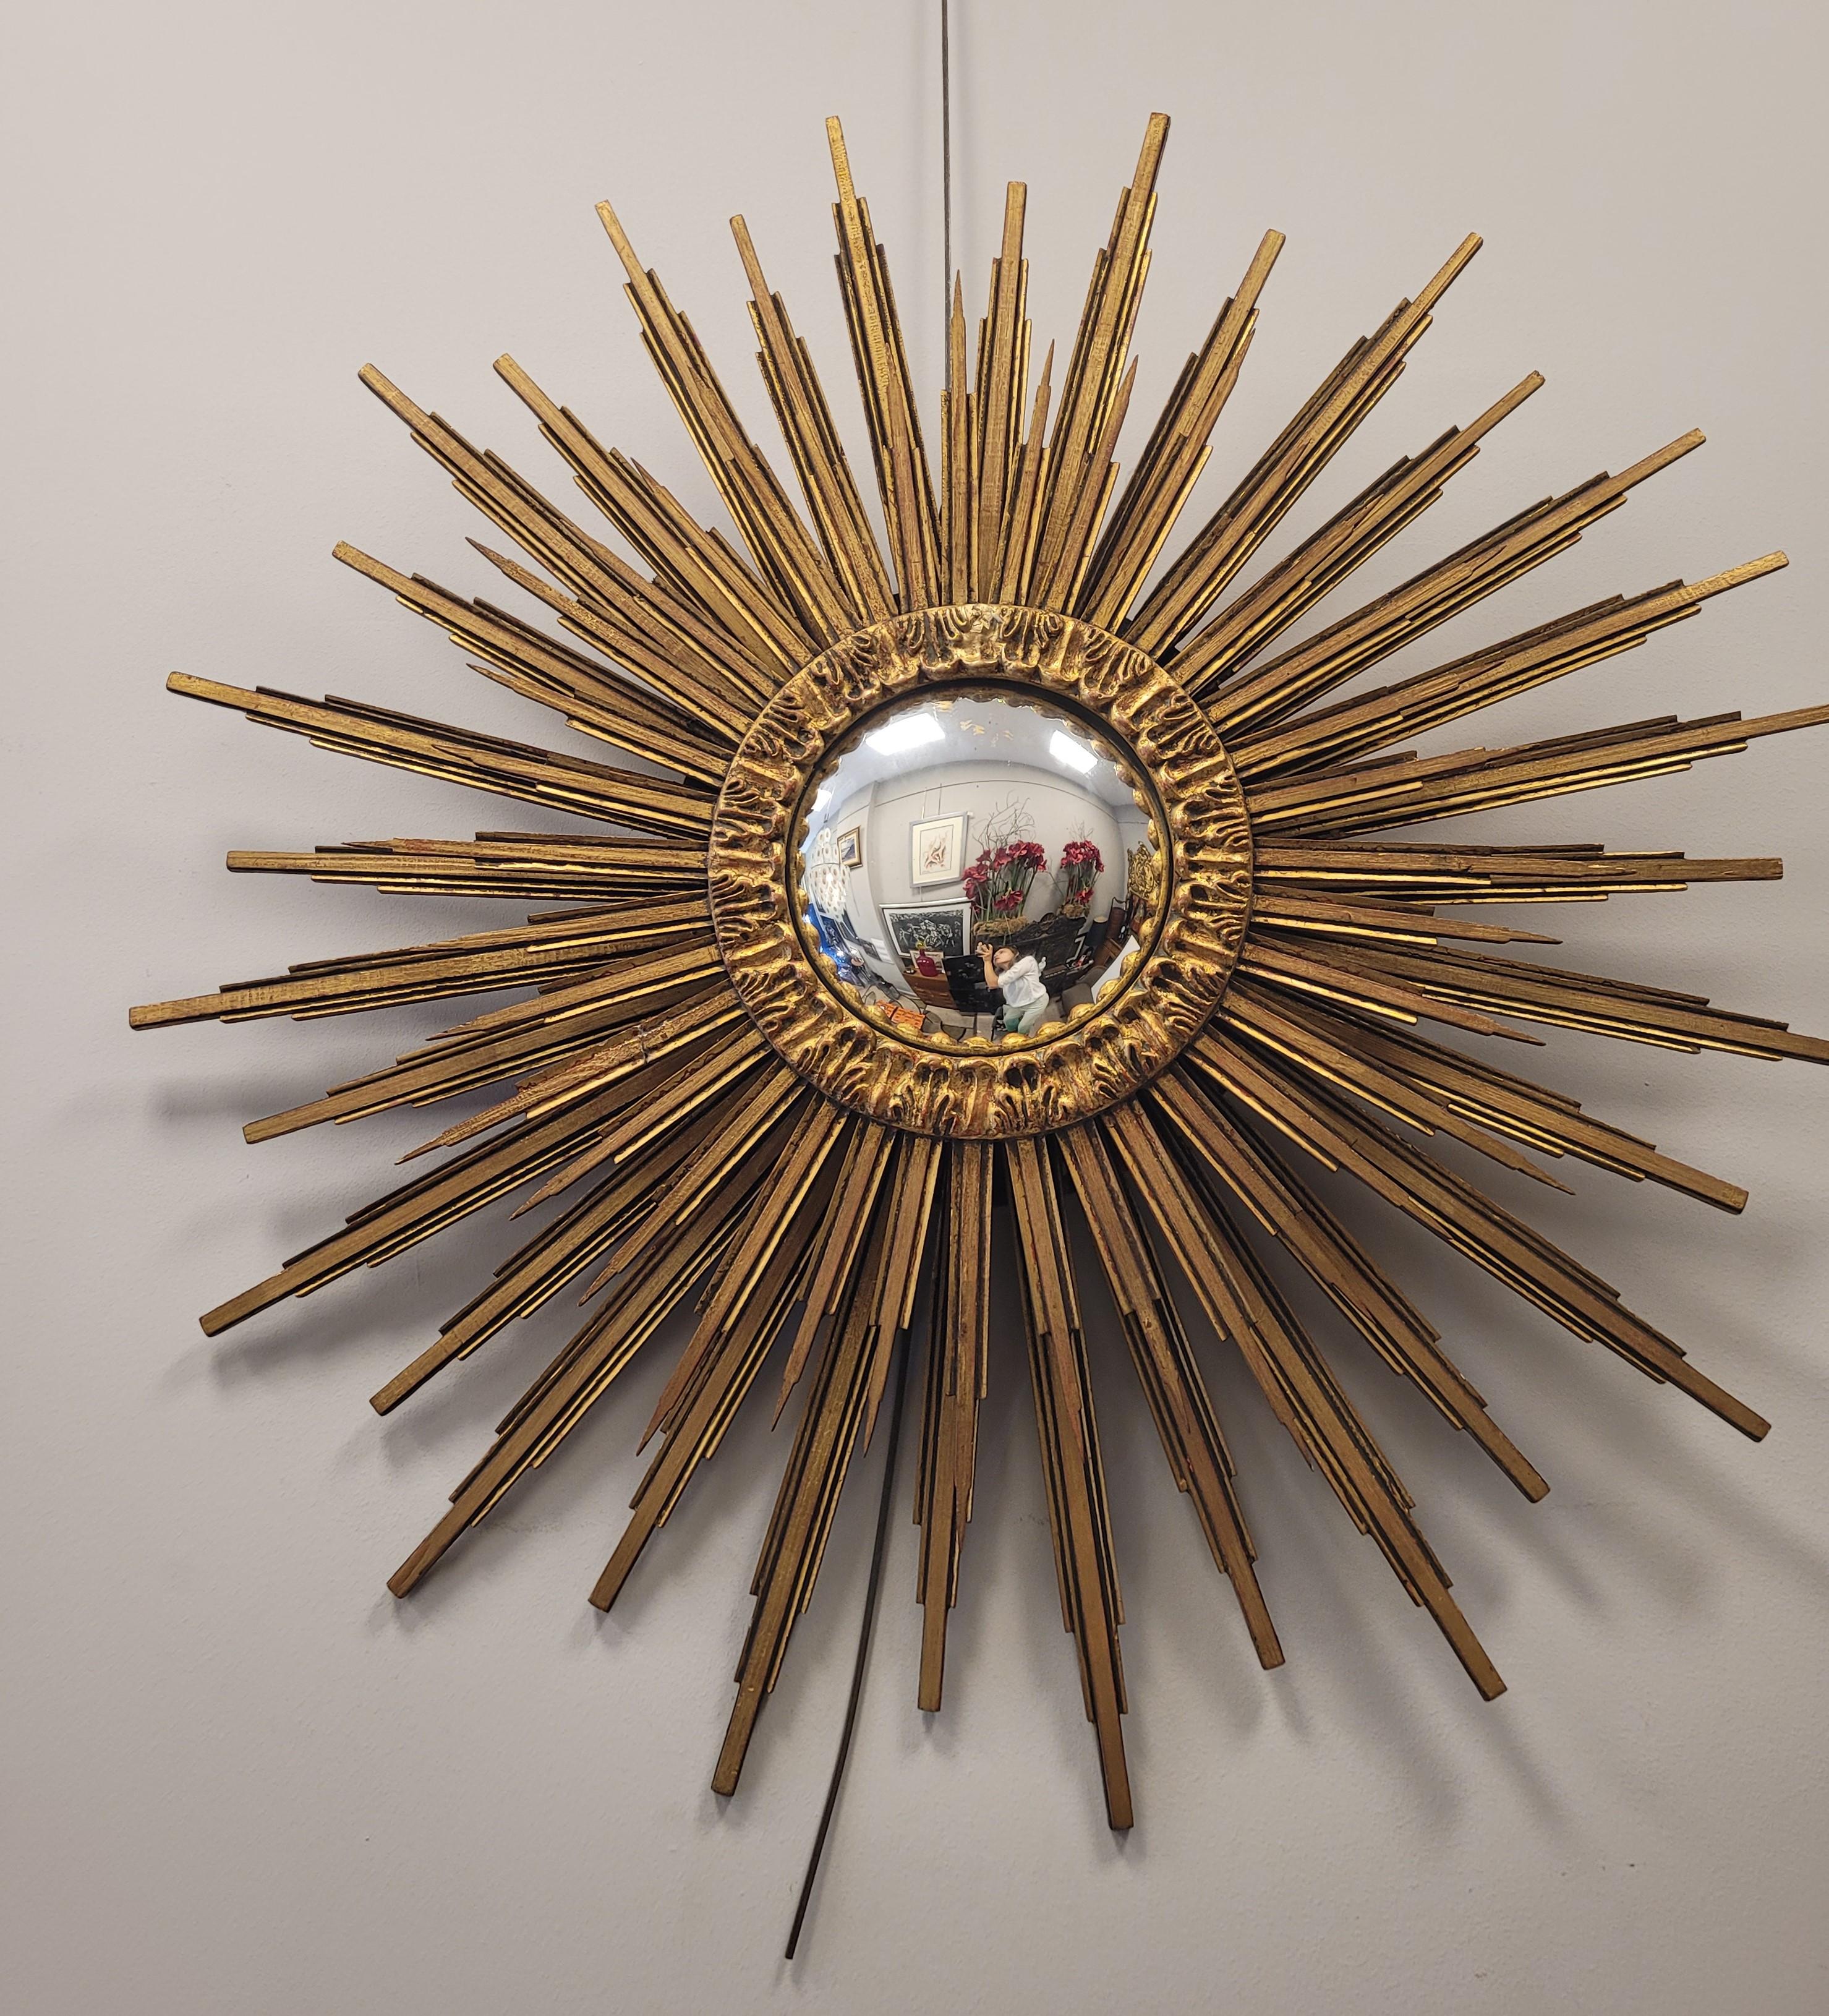 Hand-Crafted Convex Sunburst Mirror golden wood